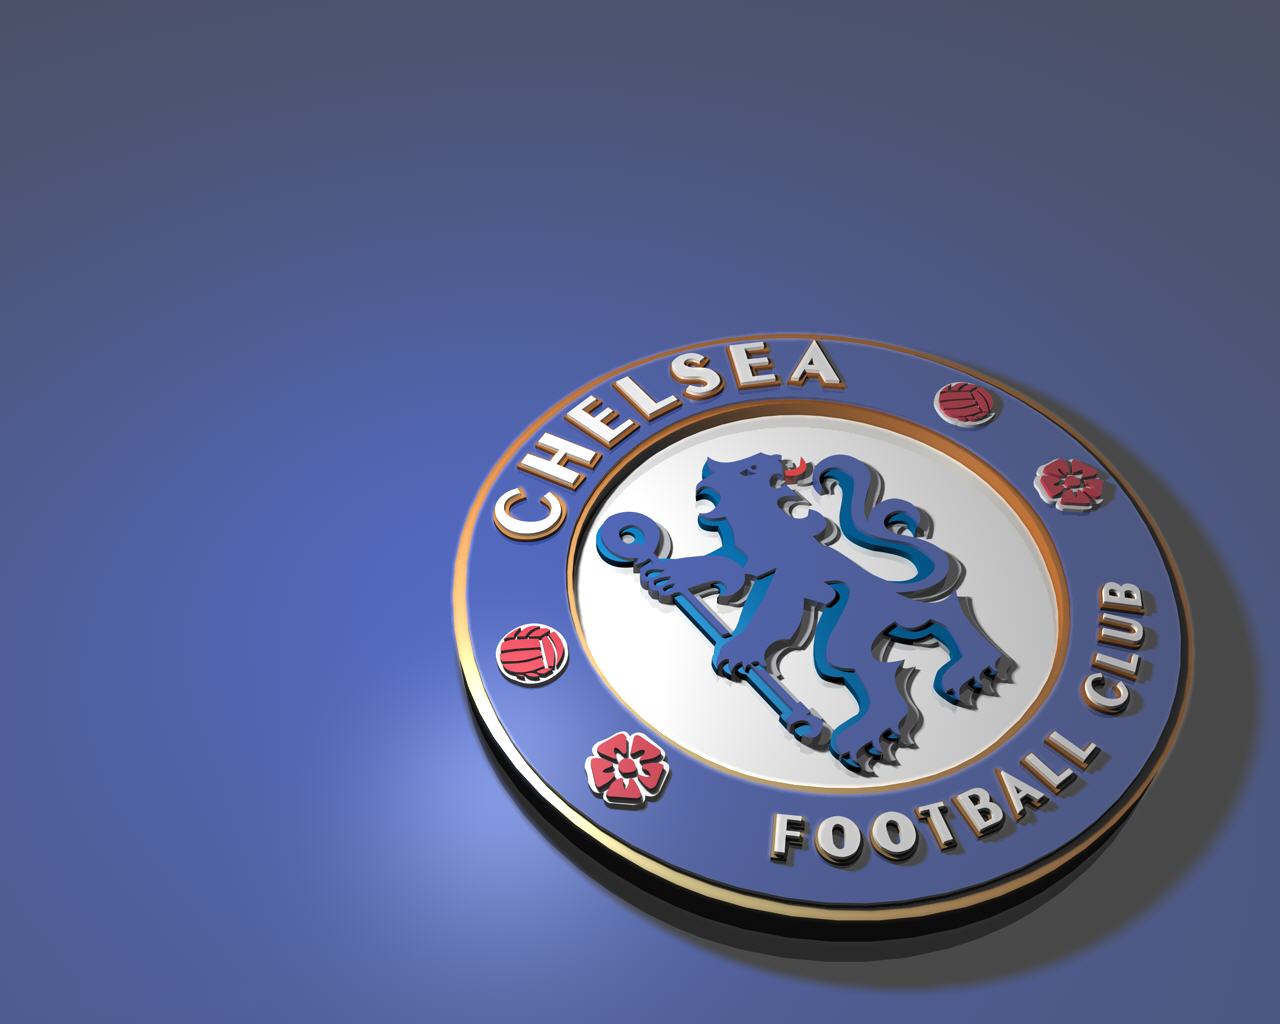 Chelsea Fc Logo Wallpaper HD